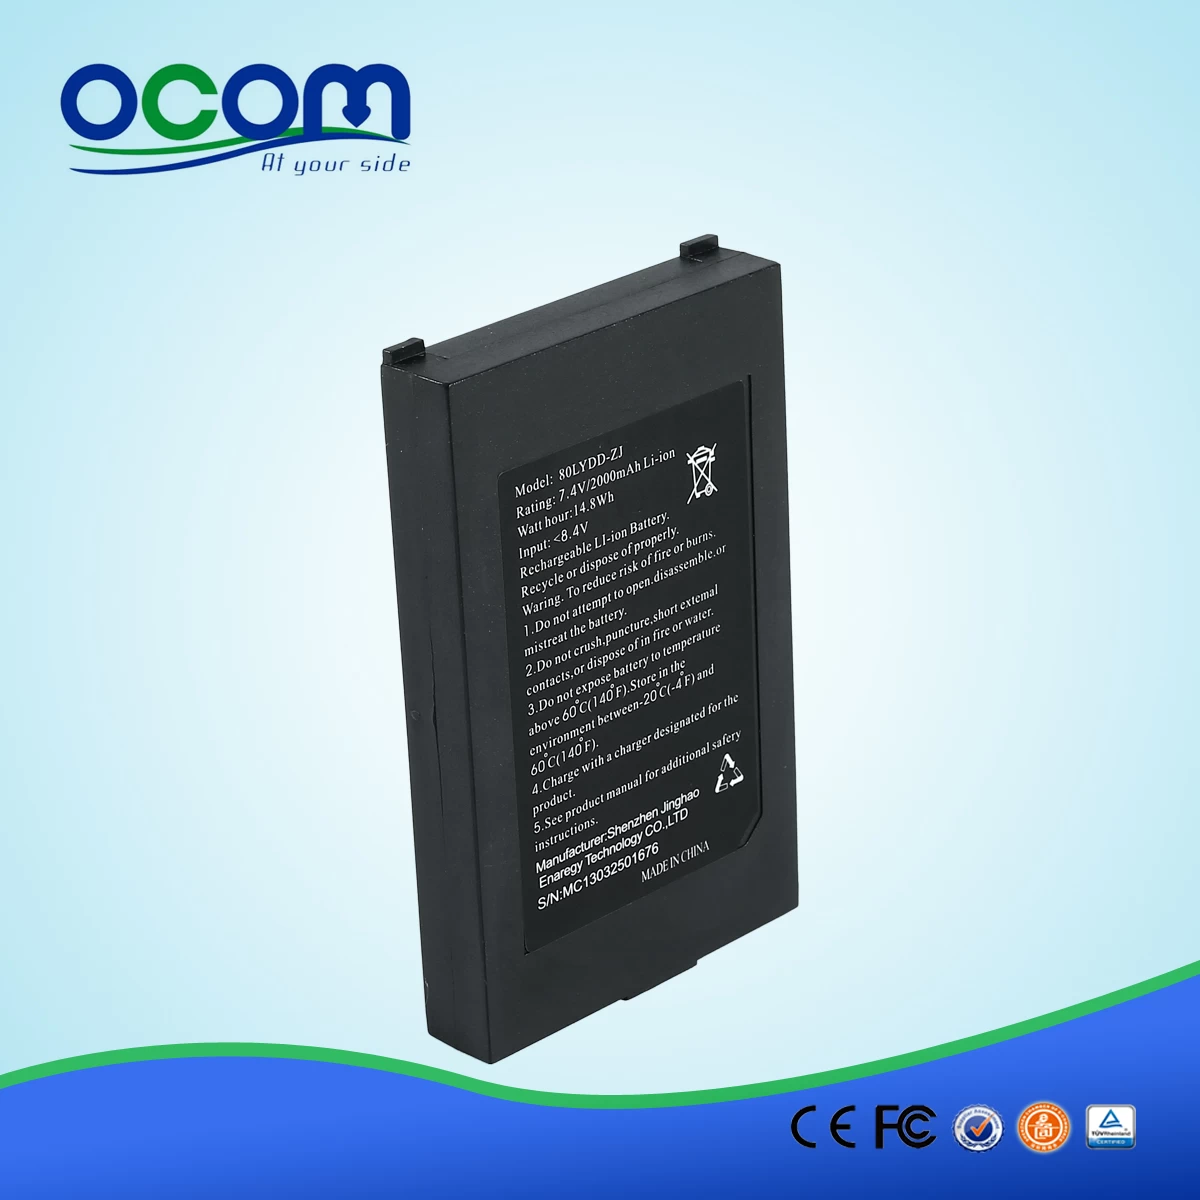 OCPP-M082 High quality 80mm usb handheld mobile bluetooth printer